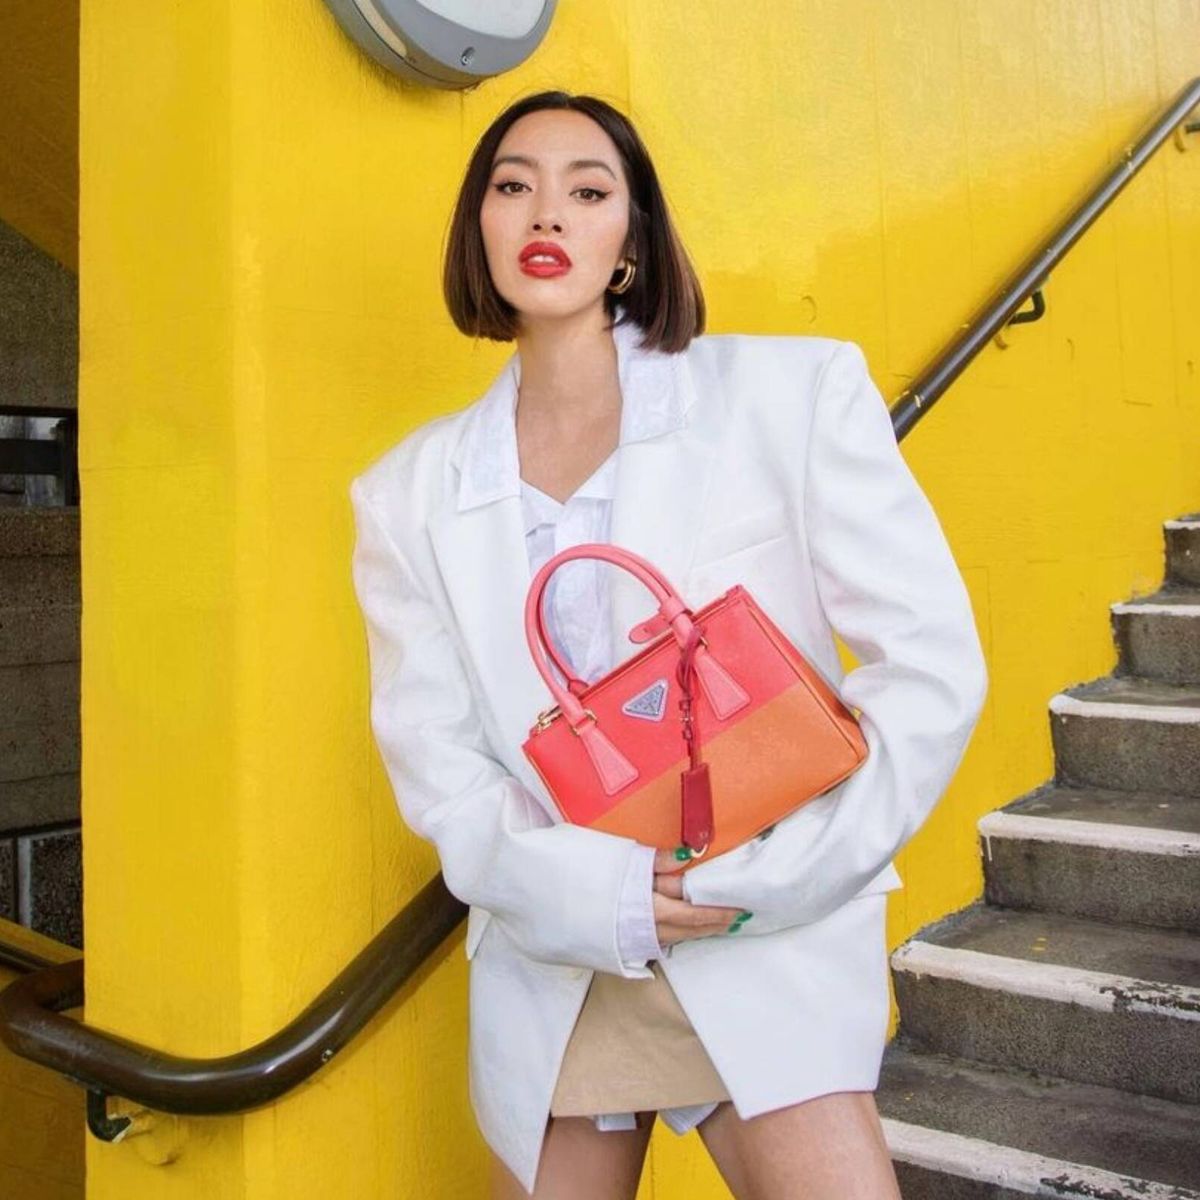 El nuevo y exclusivo bolso de Chiara Ferragni: es de Louis Vuitton